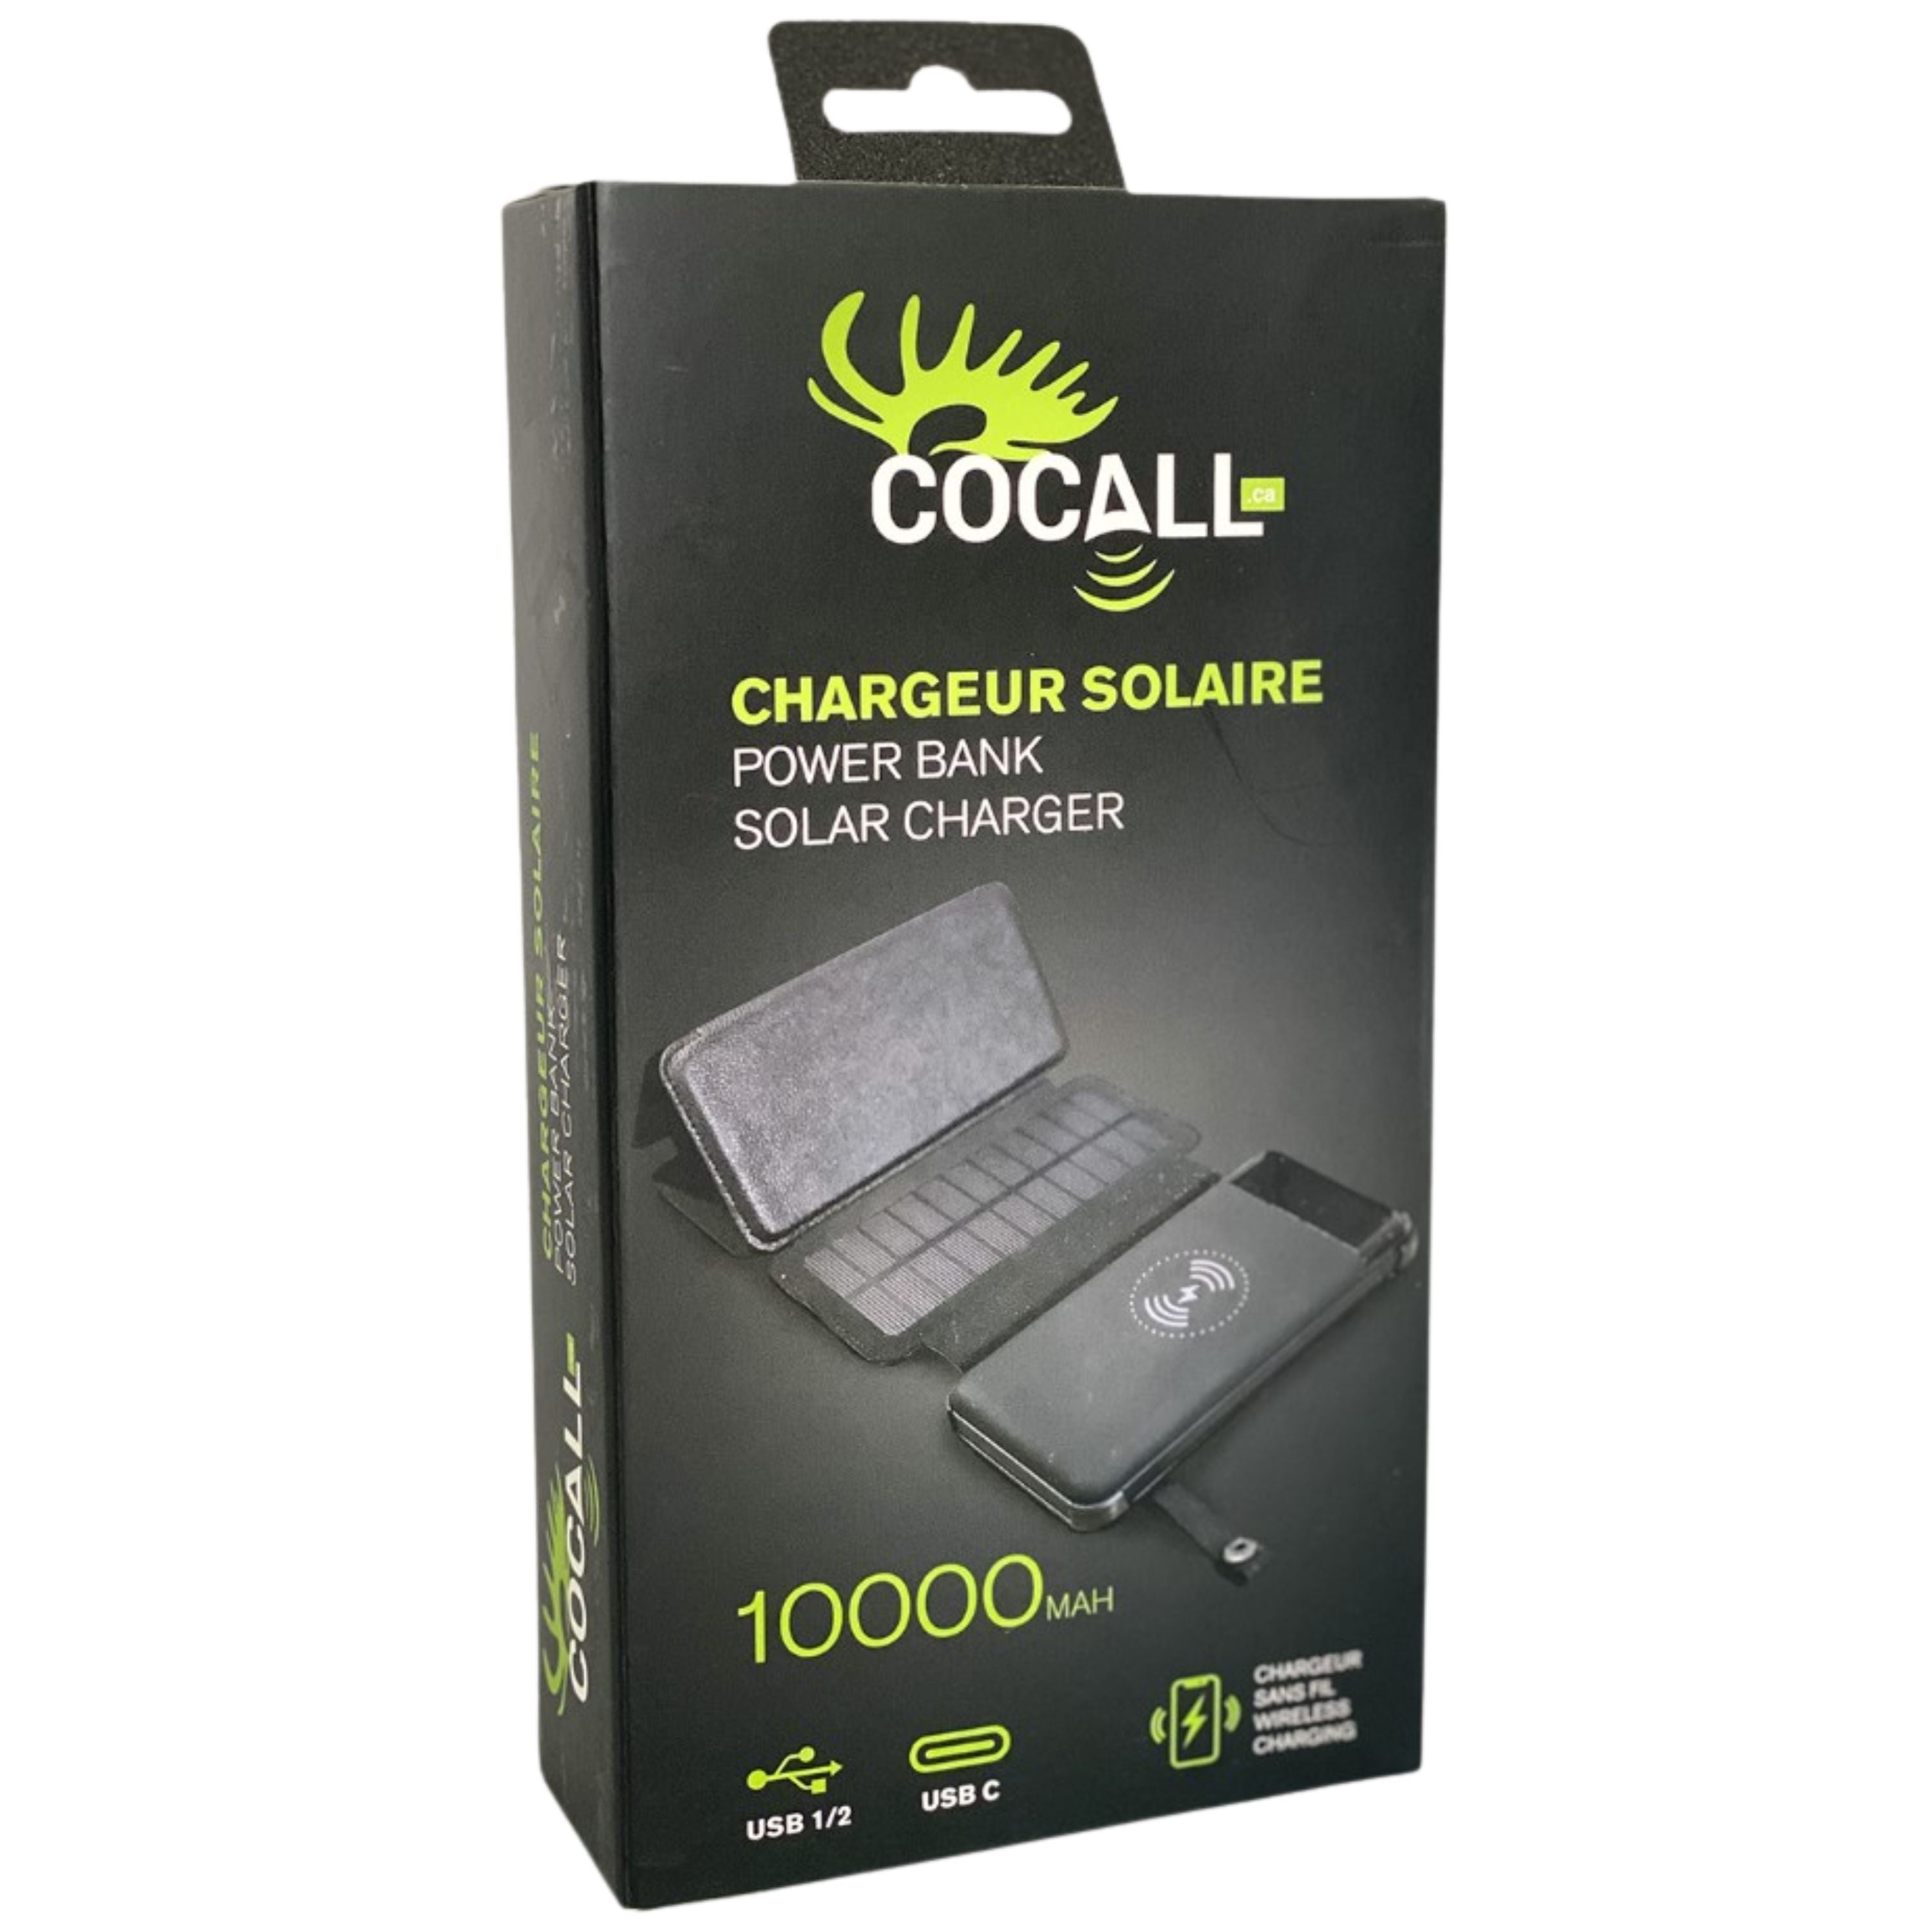 Chargeur solaire portatif pour Cocall